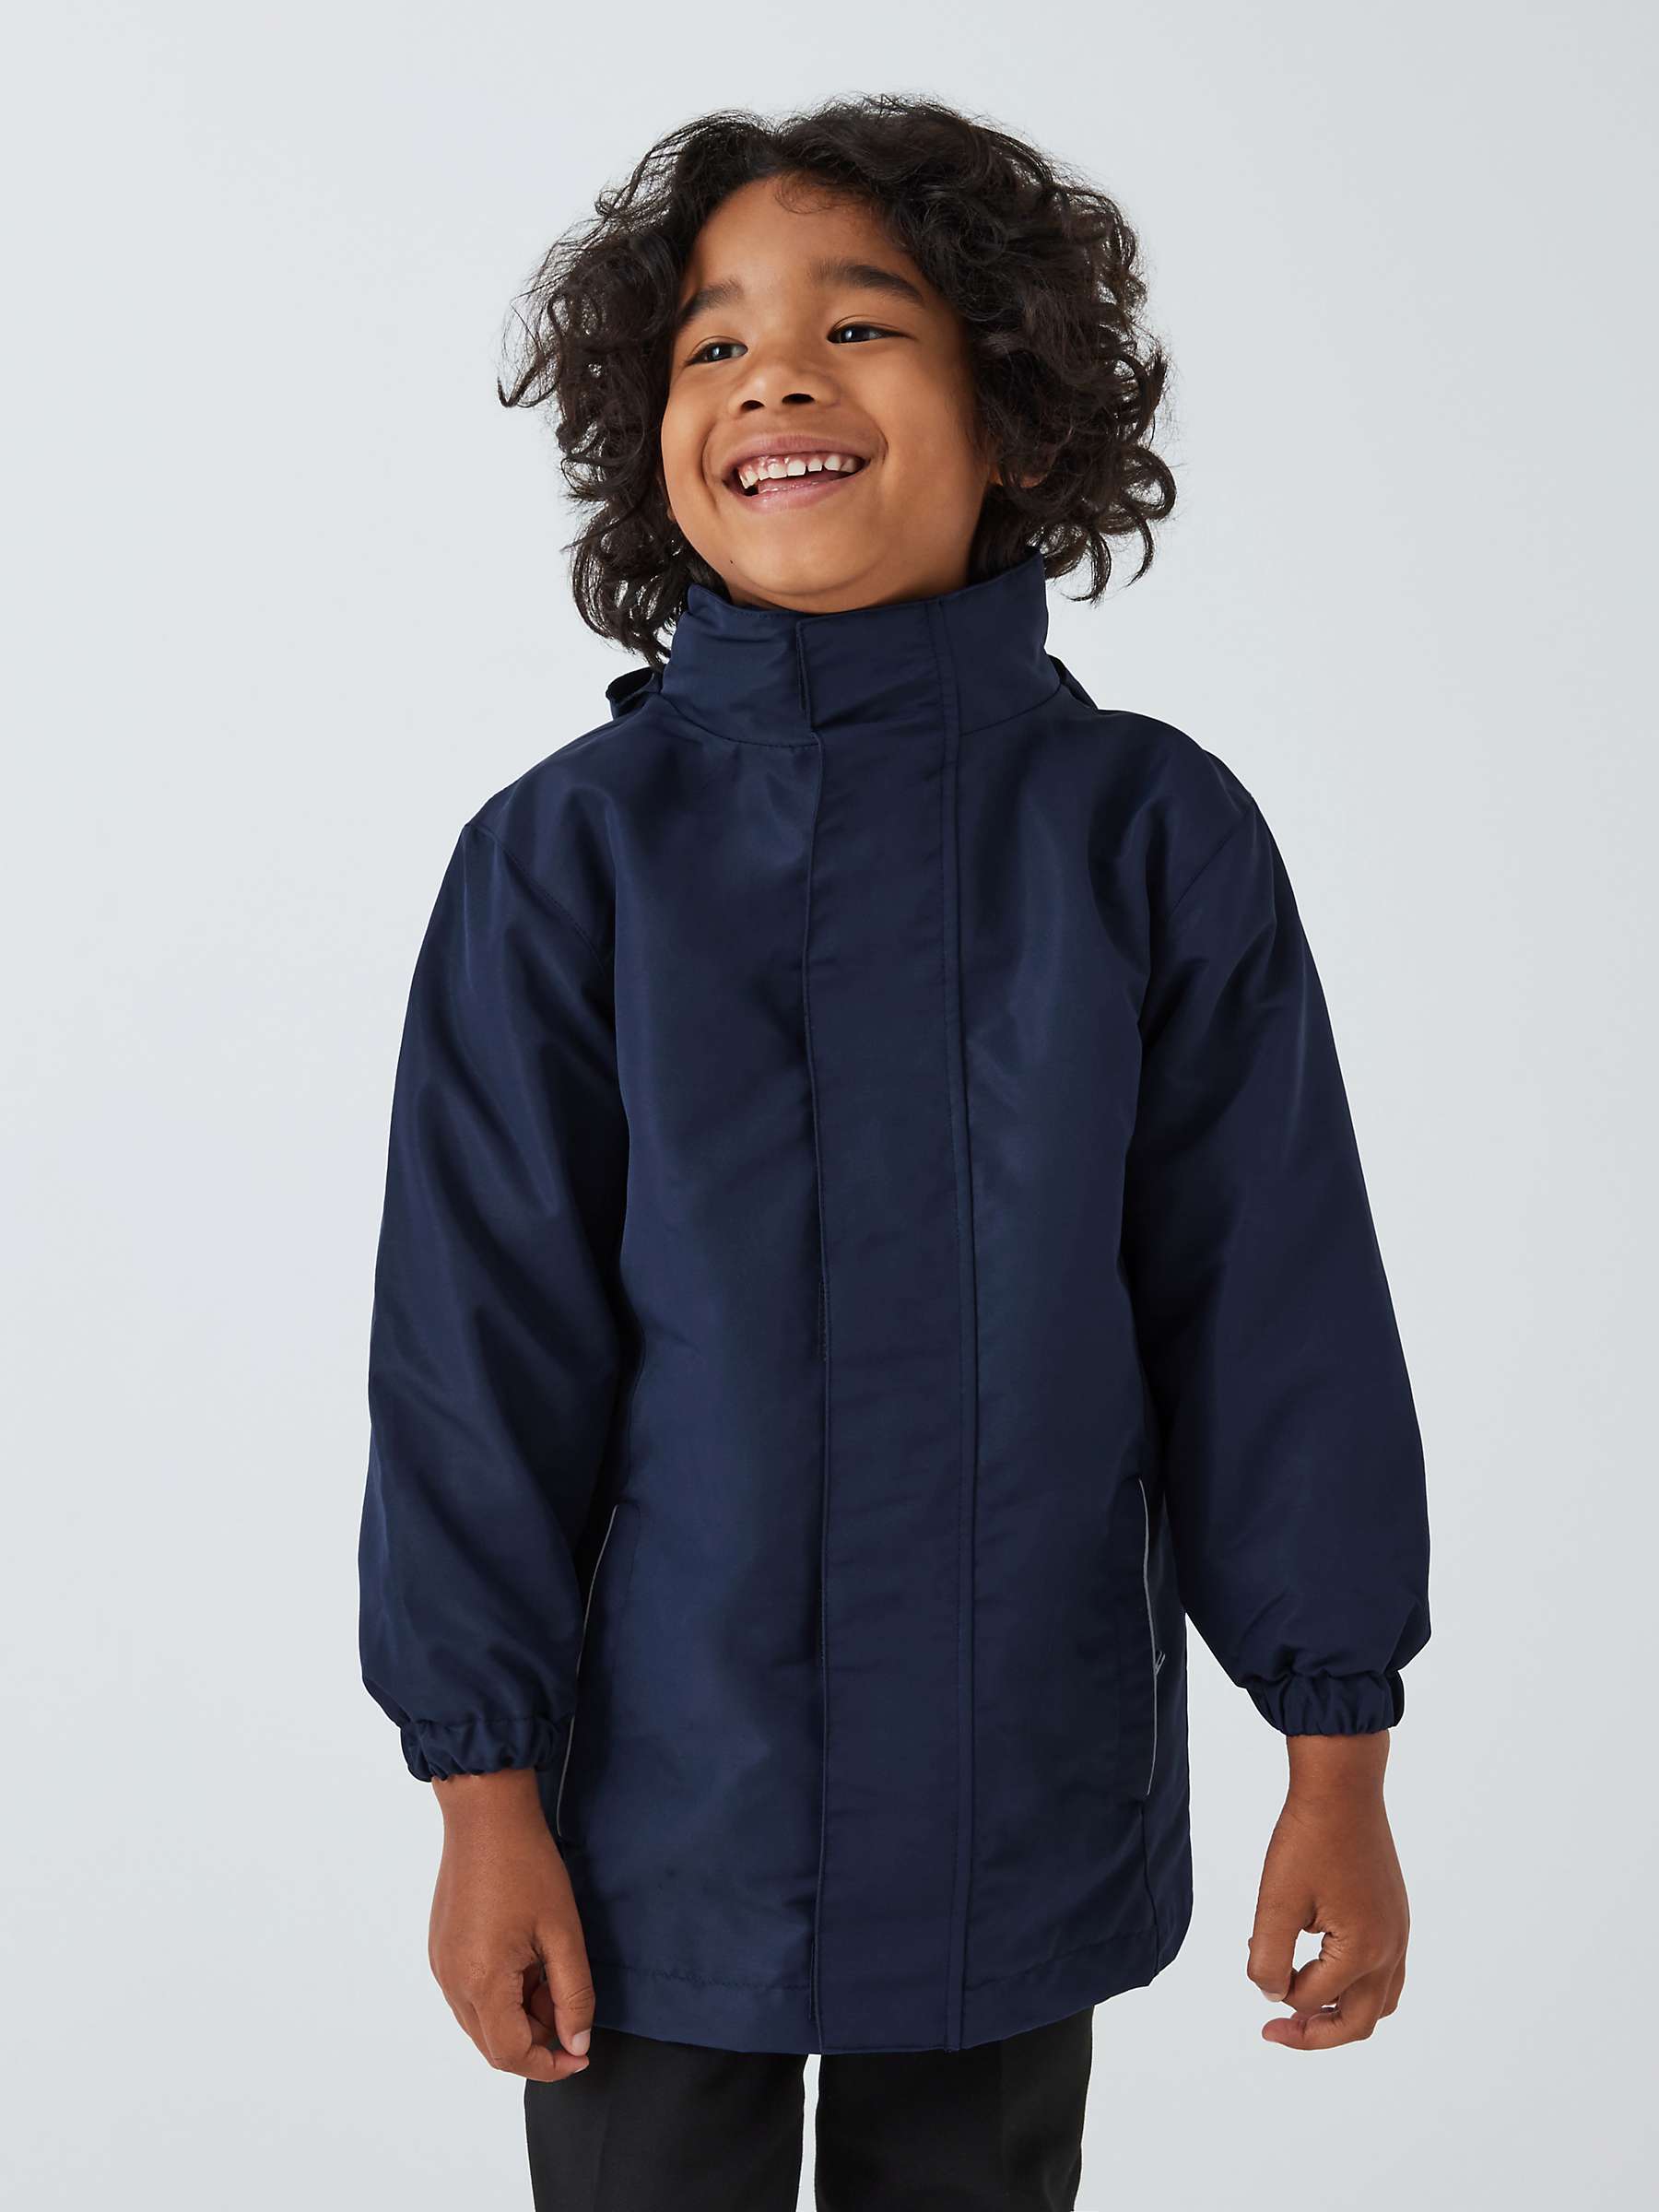 Buy John Lewis Kids' 3-In-1 School Jacket, Blue Navy Online at johnlewis.com